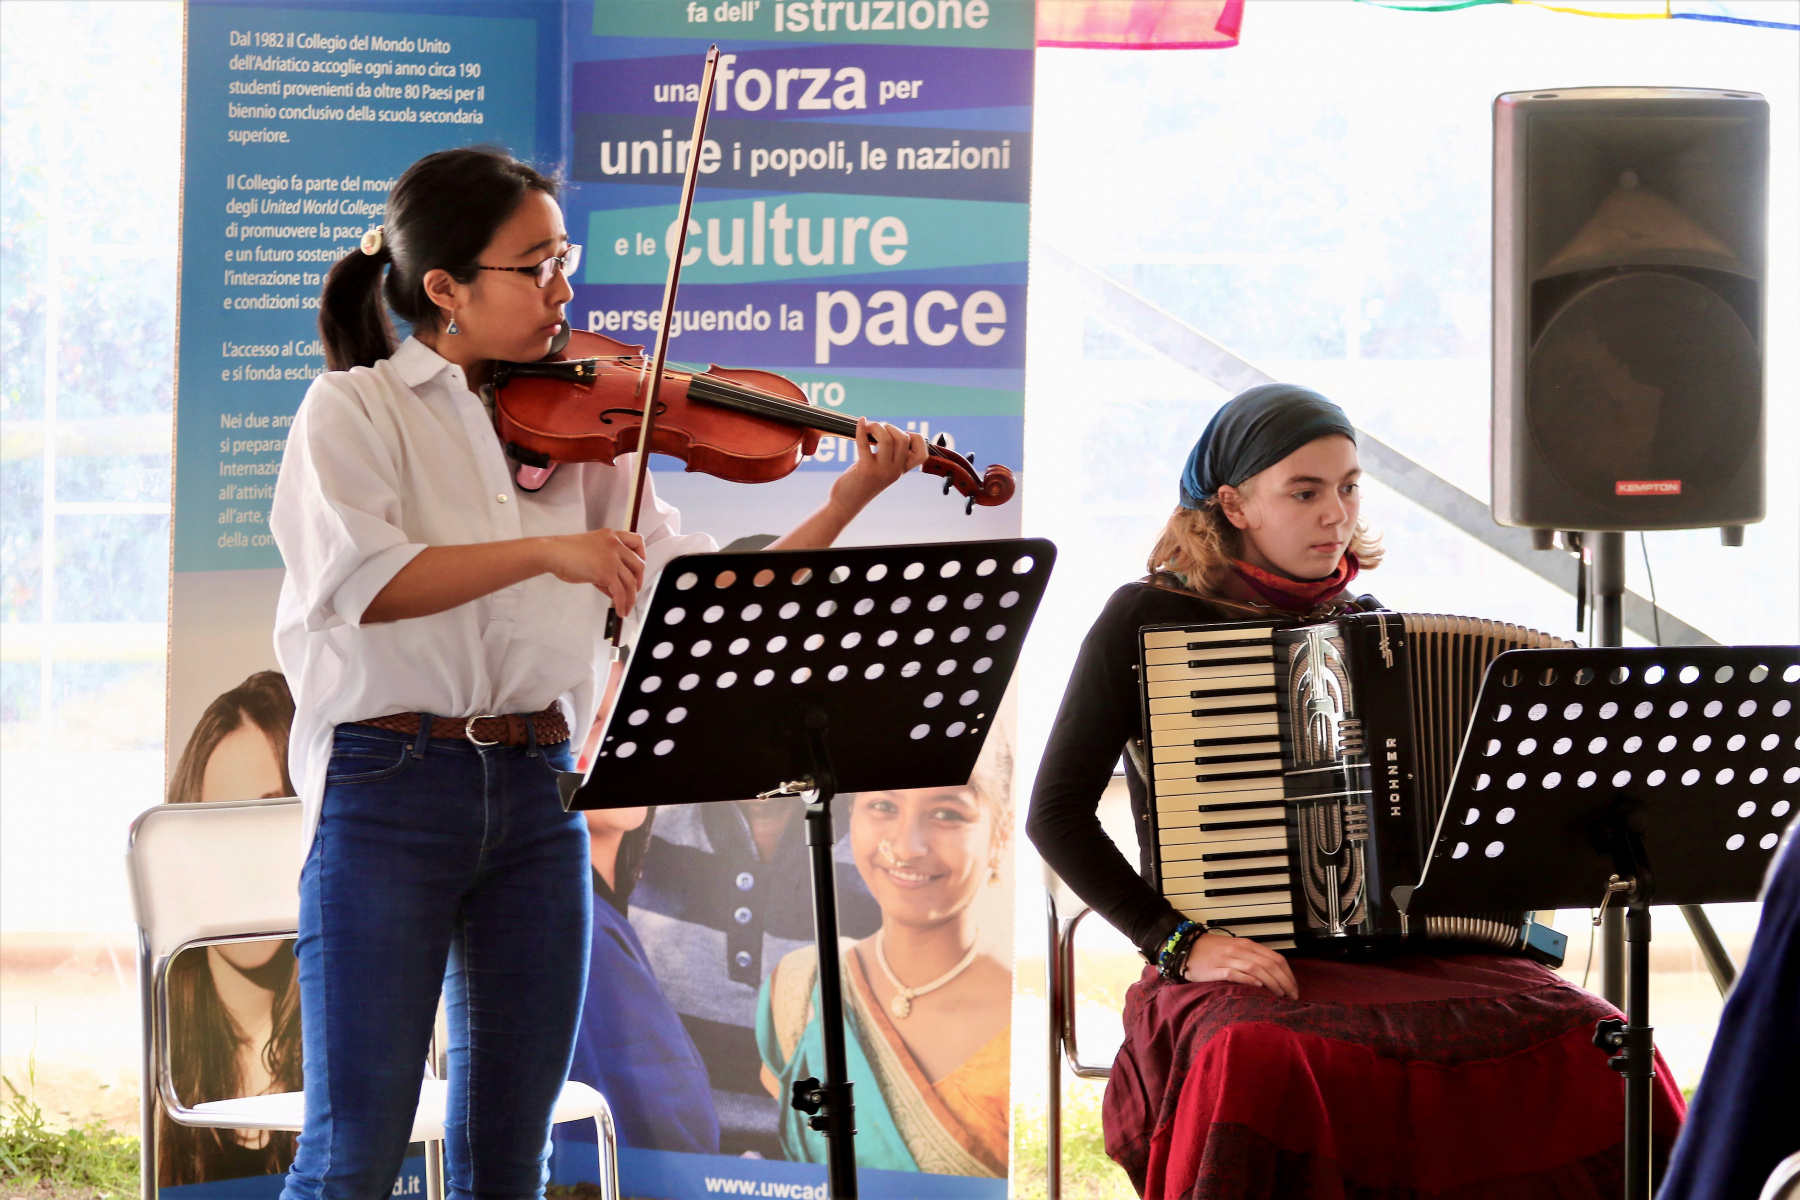 le studentesse Momoko e Doro hanno dato vita a una performance musicale su Freedom di Dorian Dionisi